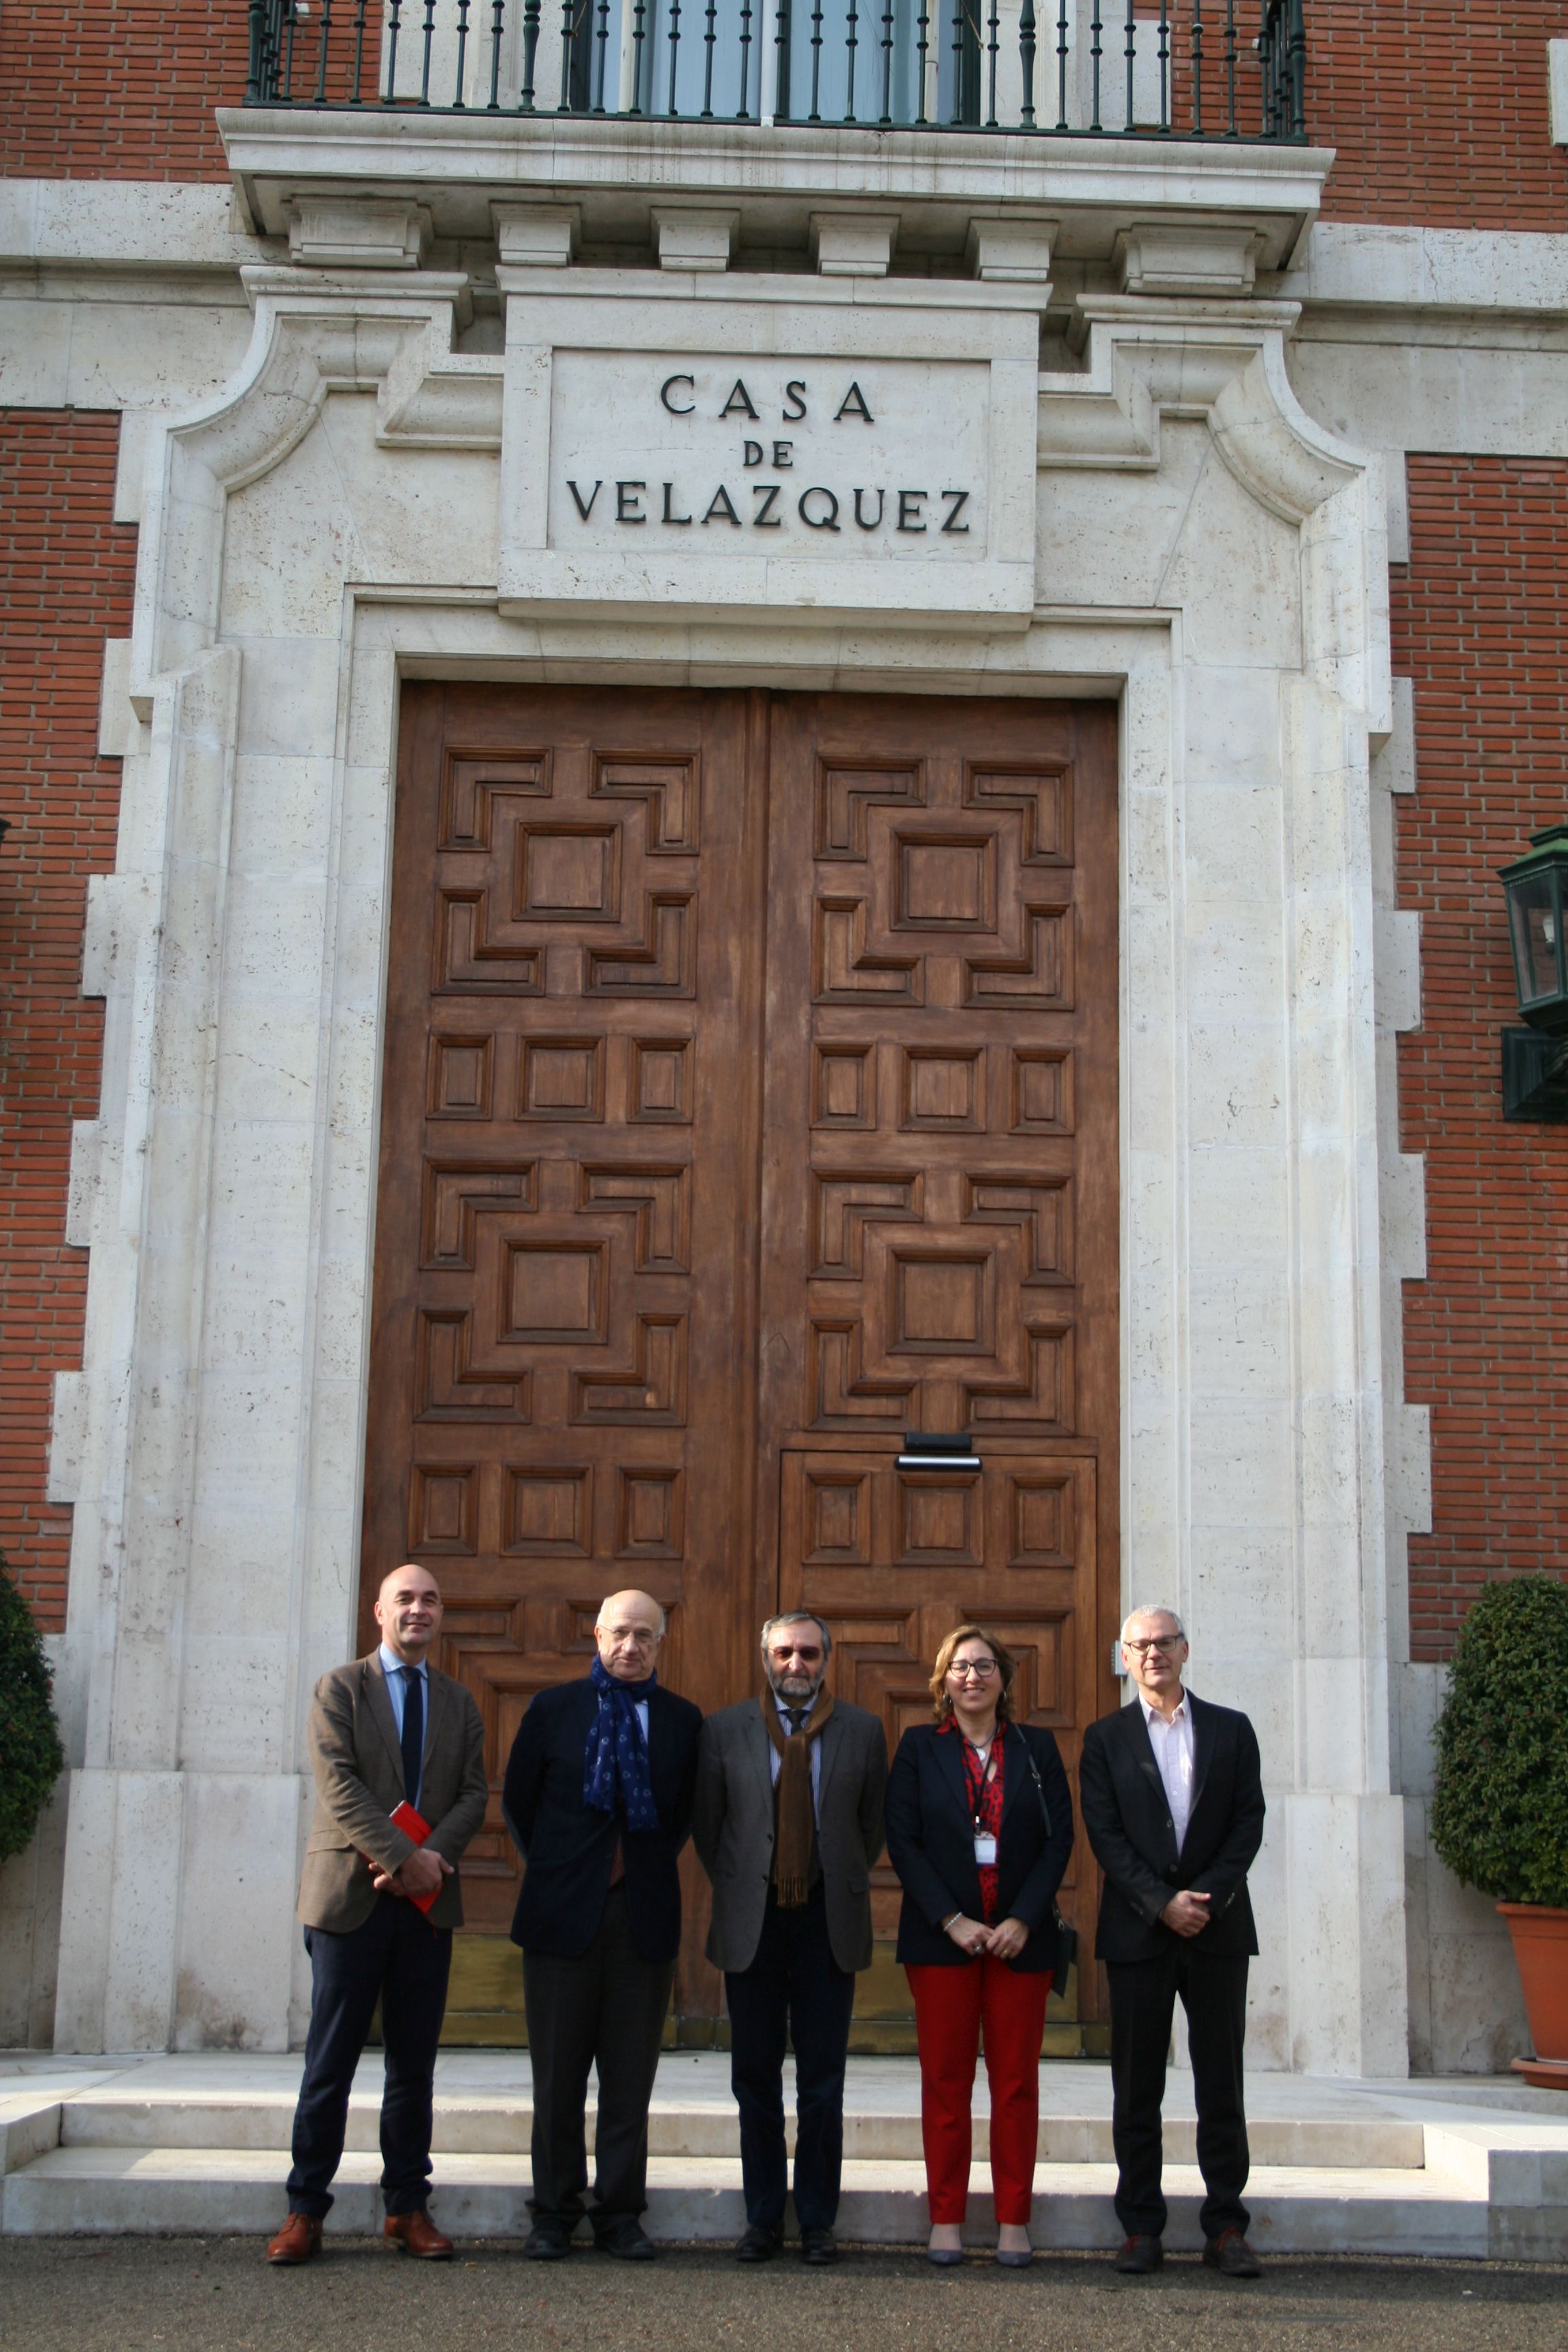 La Universidad de Murcia a través del Campus Mare Nostrum y Casa Velázquez acuerdan firmar convenio marco para colaboraciones futuras